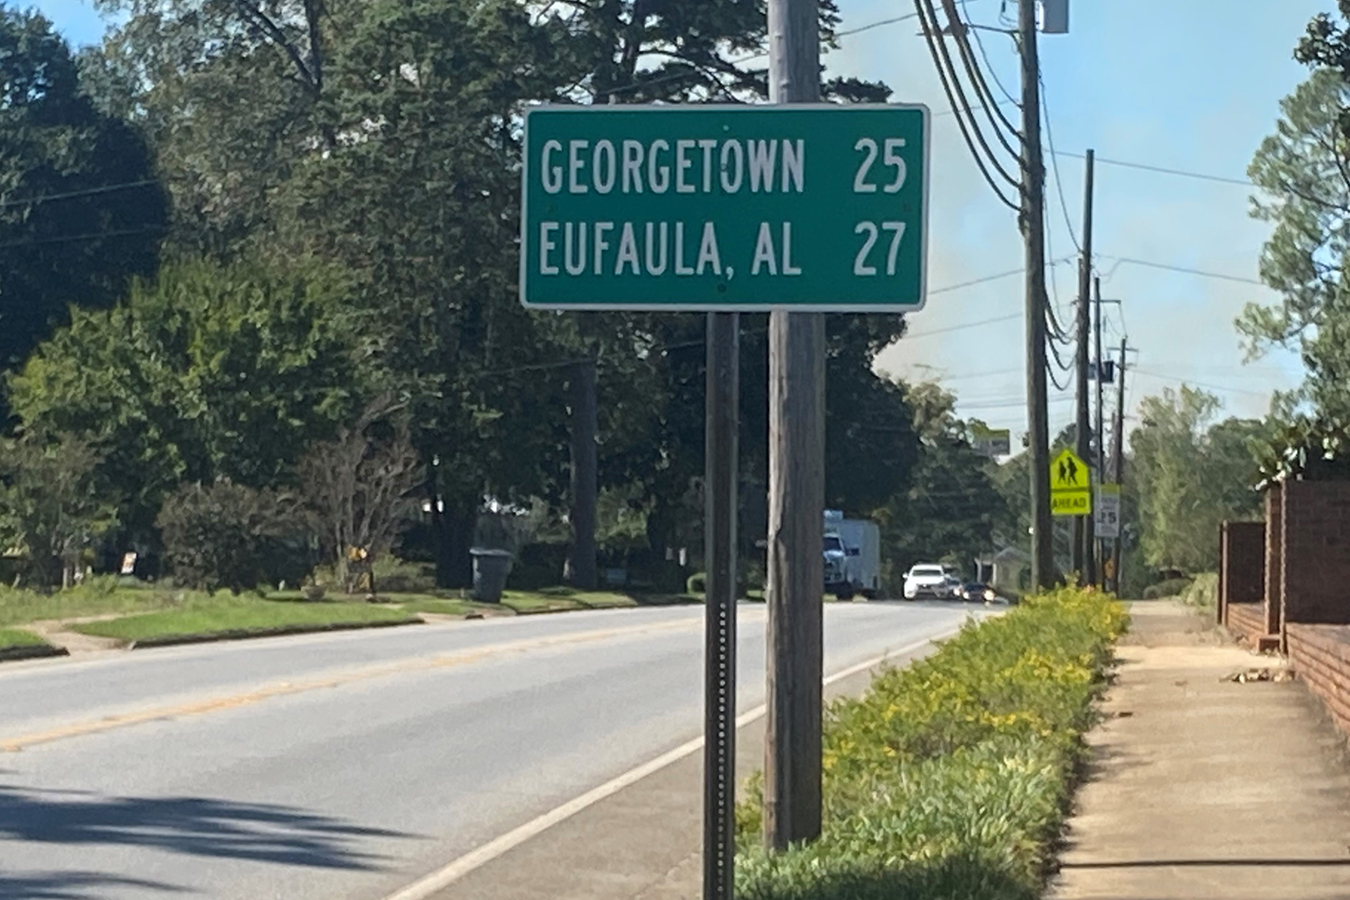 A Rural Georgia Community Reels After Its Hospital Closes